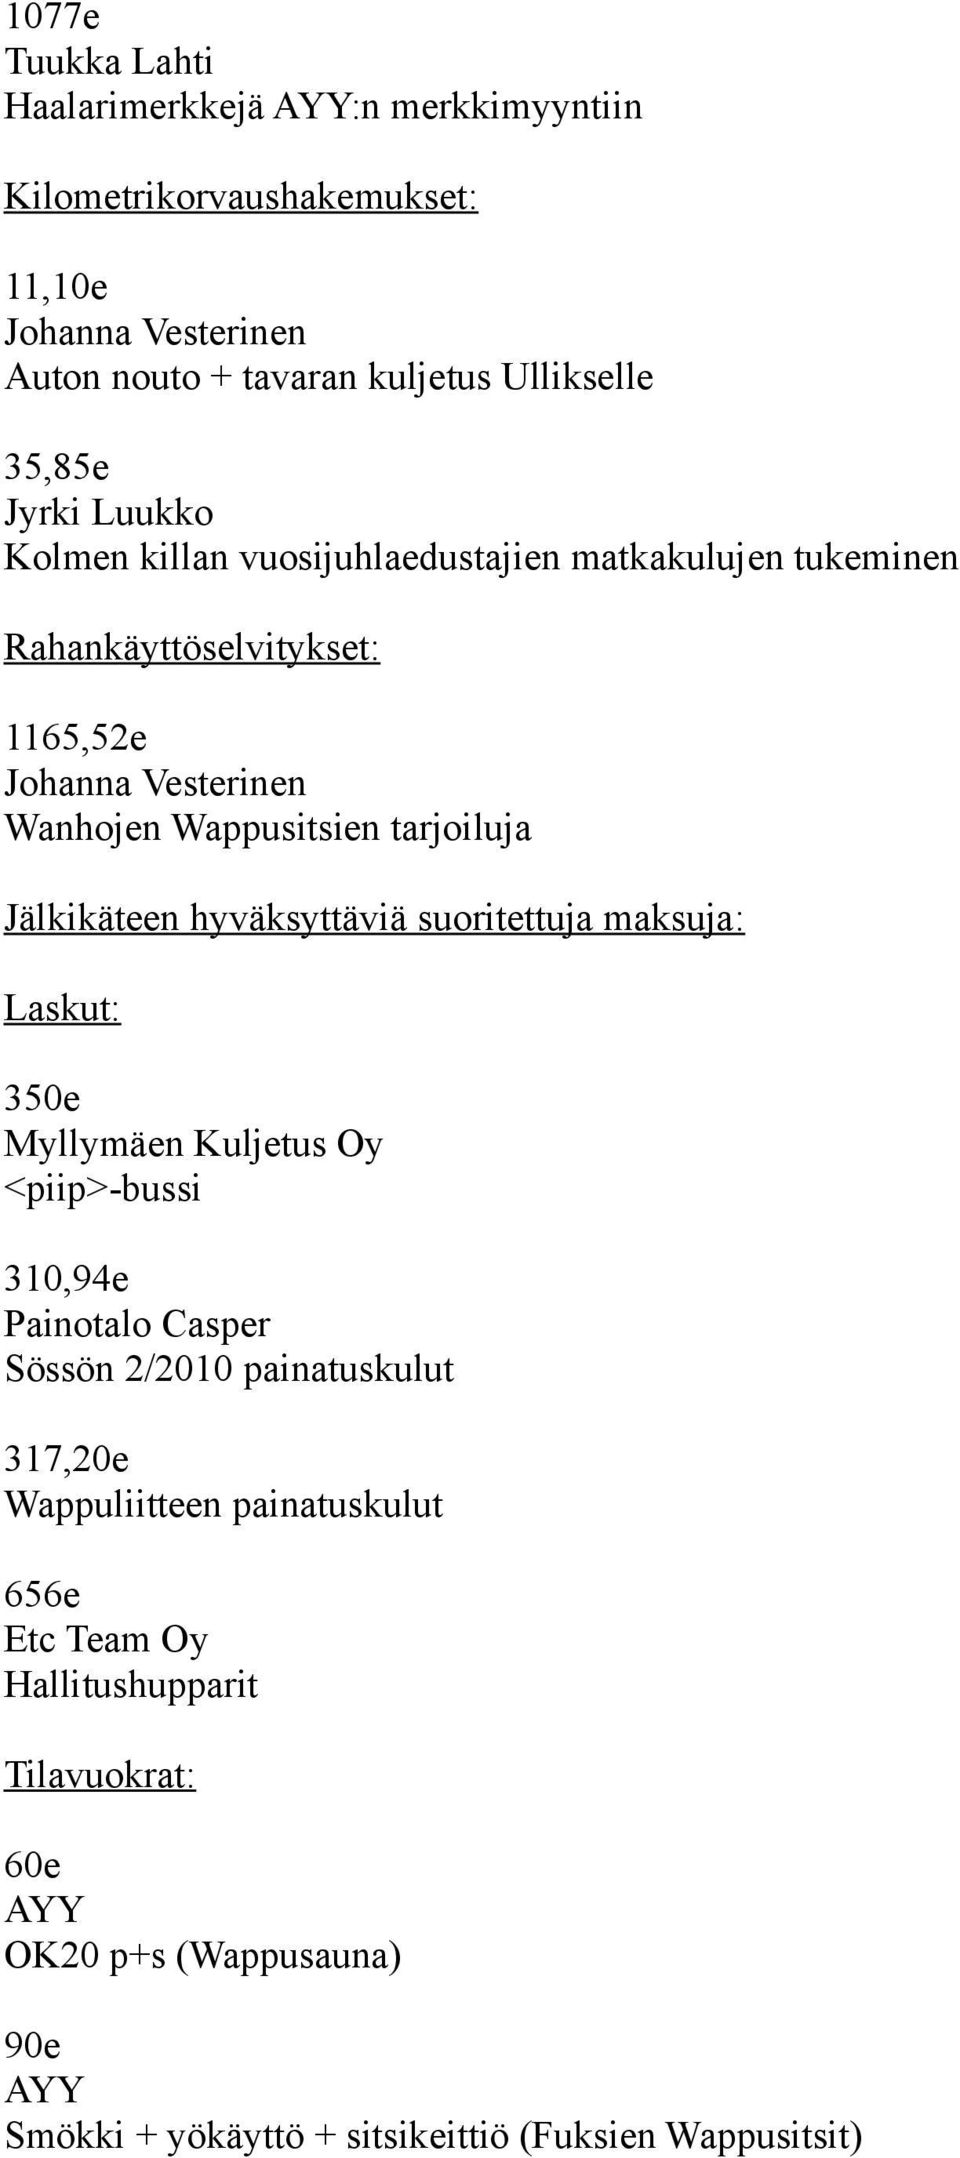 Jälkikäteen hyväksyttäviä suoritettuja maksuja: Laskut: 350e Myllymäen Kuljetus Oy <piip>-bussi 310,94e Painotalo Casper Sössön 2/2010 painatuskulut 317,20e